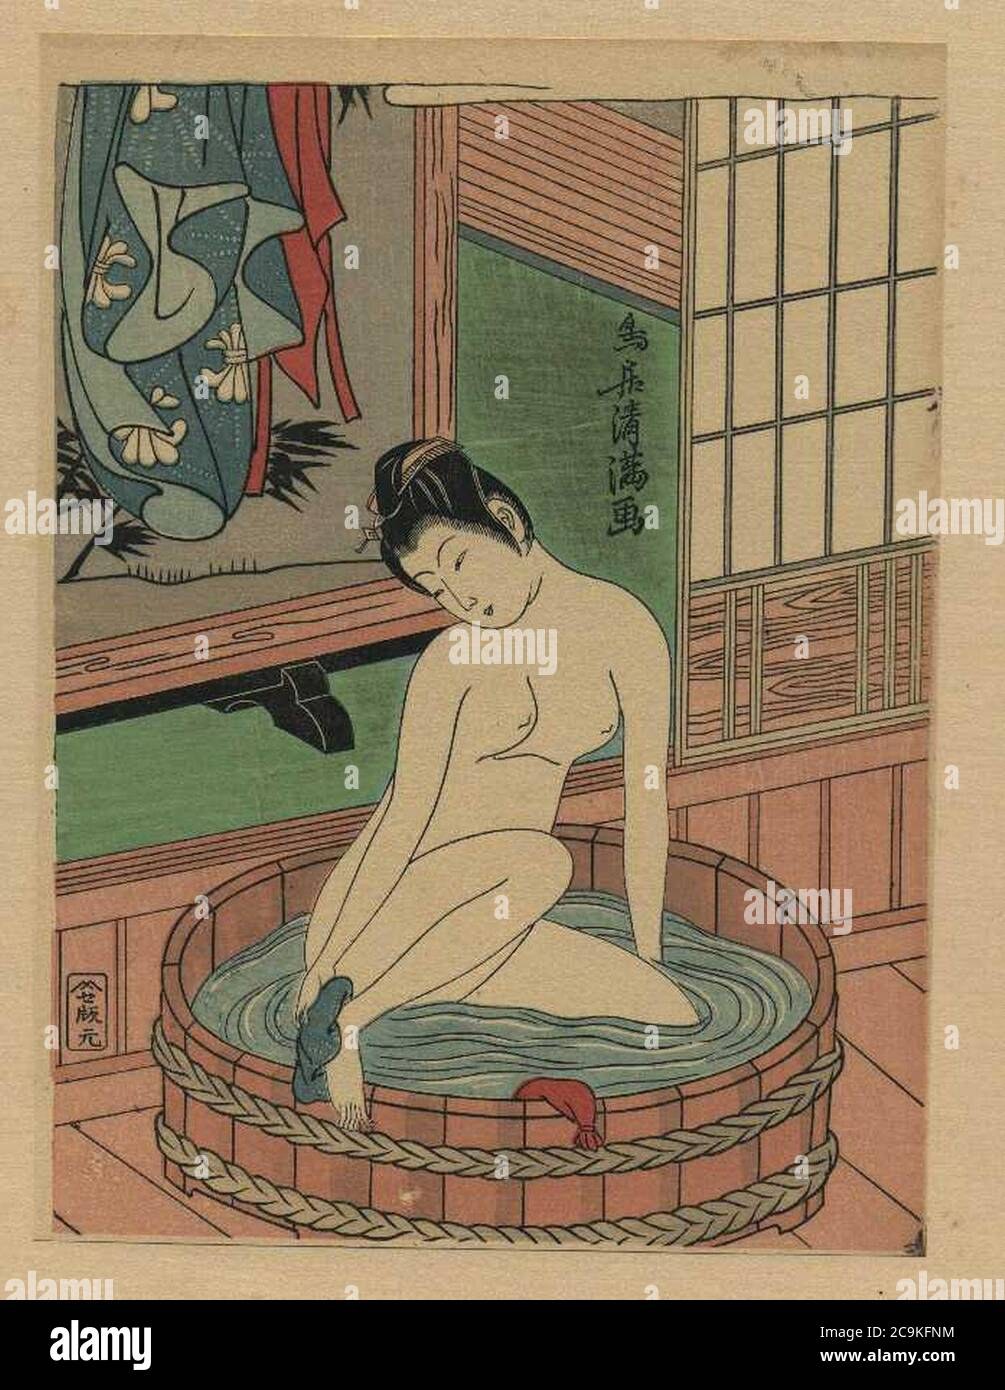 эротика японские бани фото 20